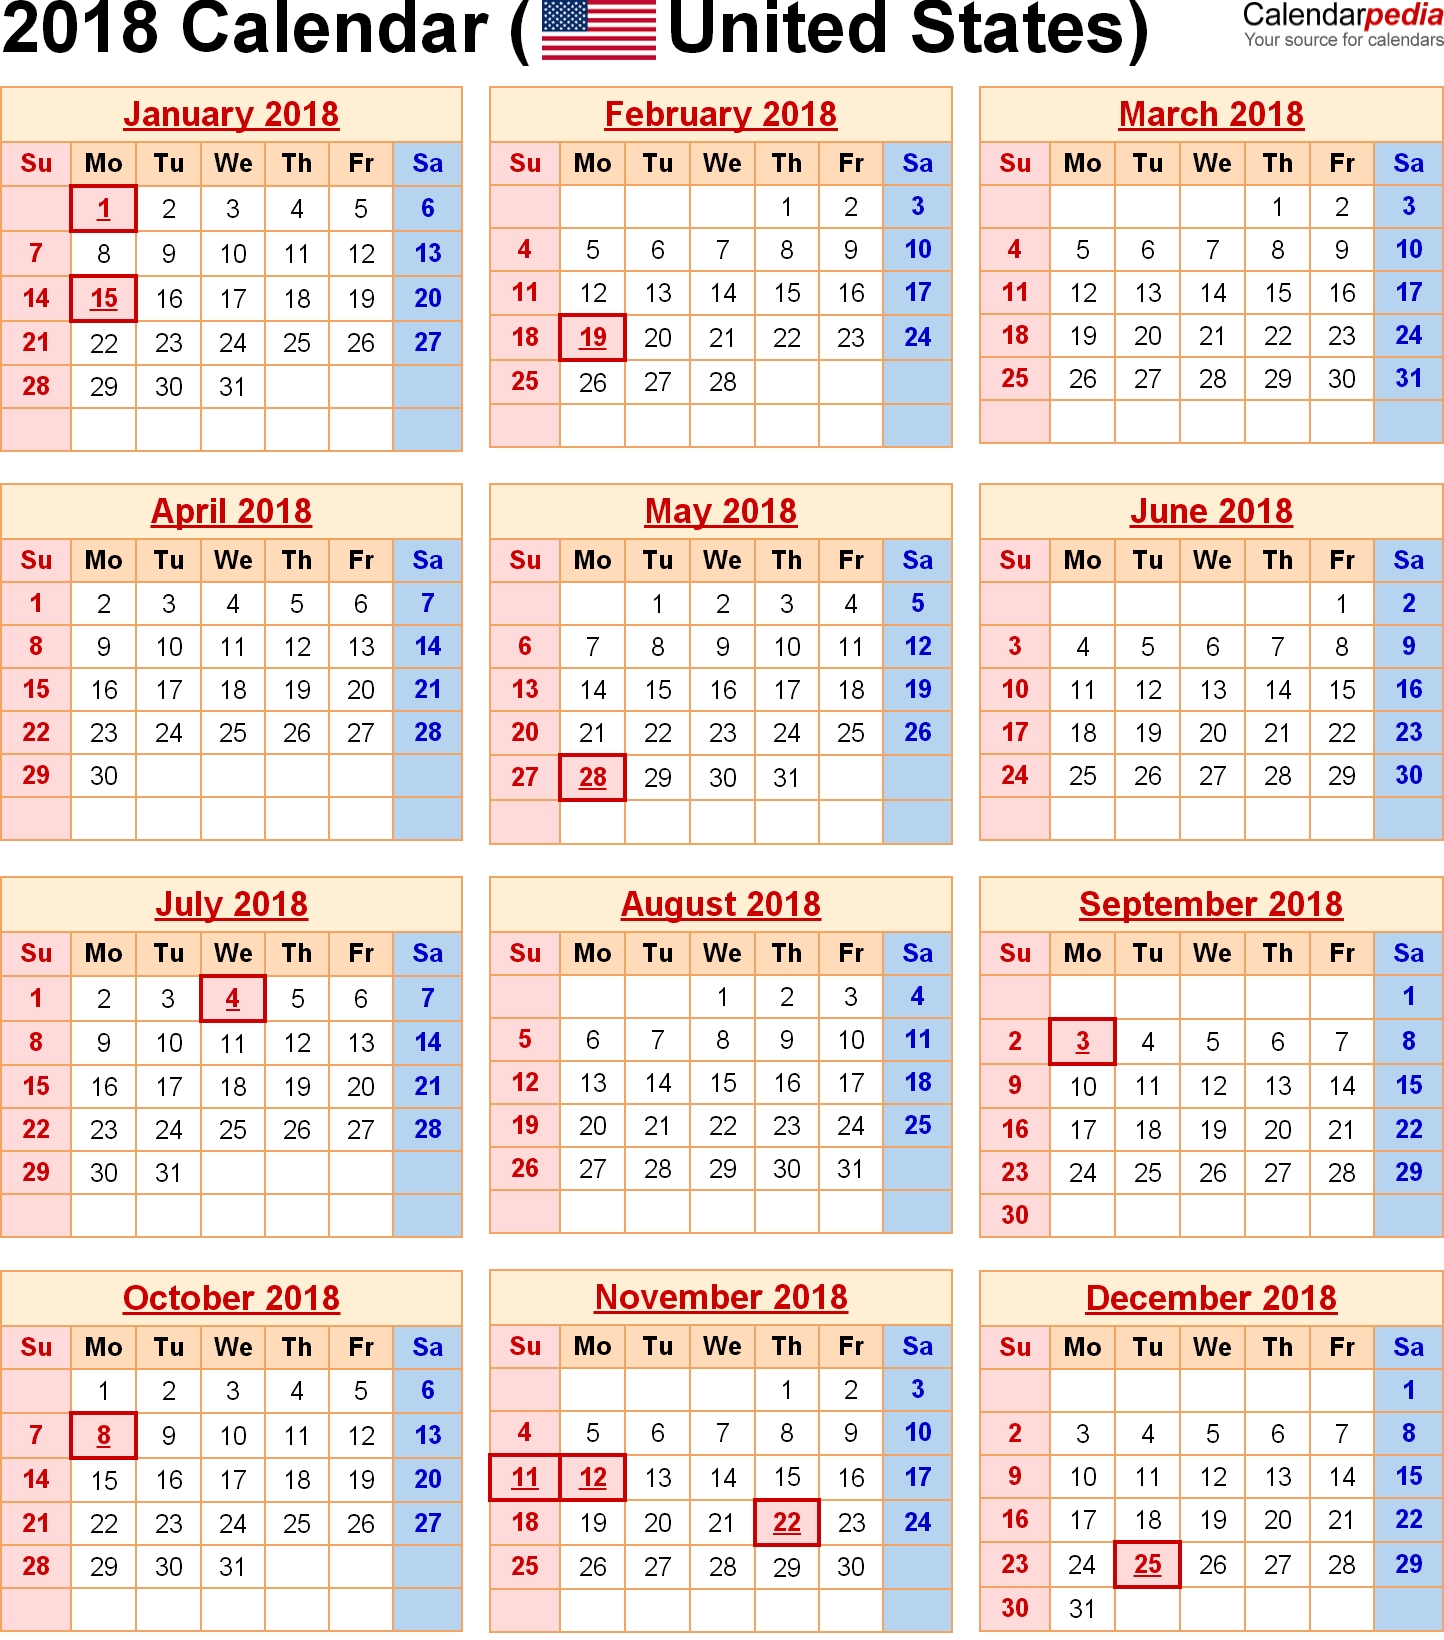 2018 Calendar United States Holidays | 2018 Calendars | Pinterest Year Calendar And Holidays